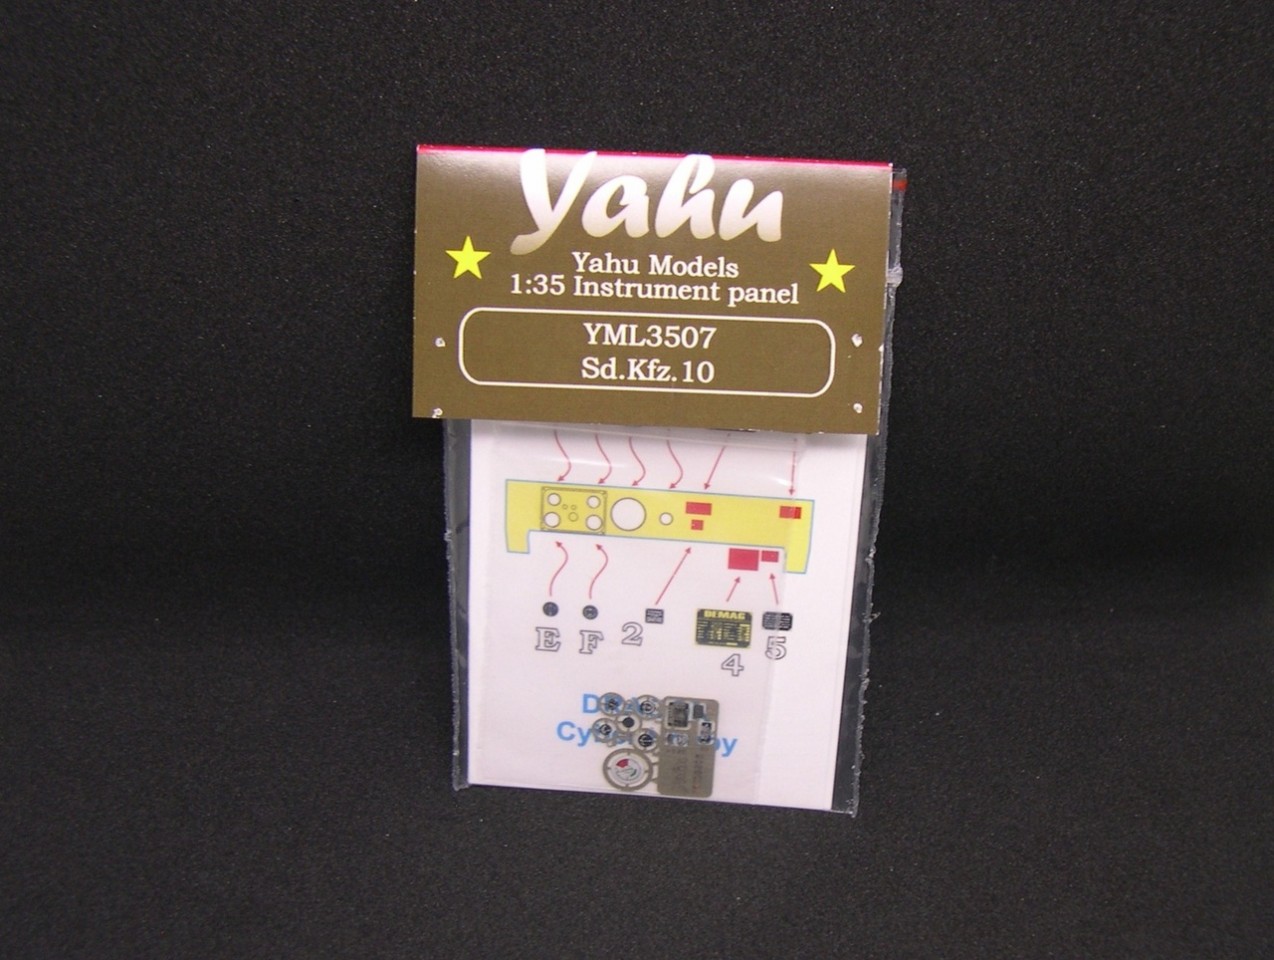 YAHU YML3507 Sd.Kfz 10 1/35 Instrument panel